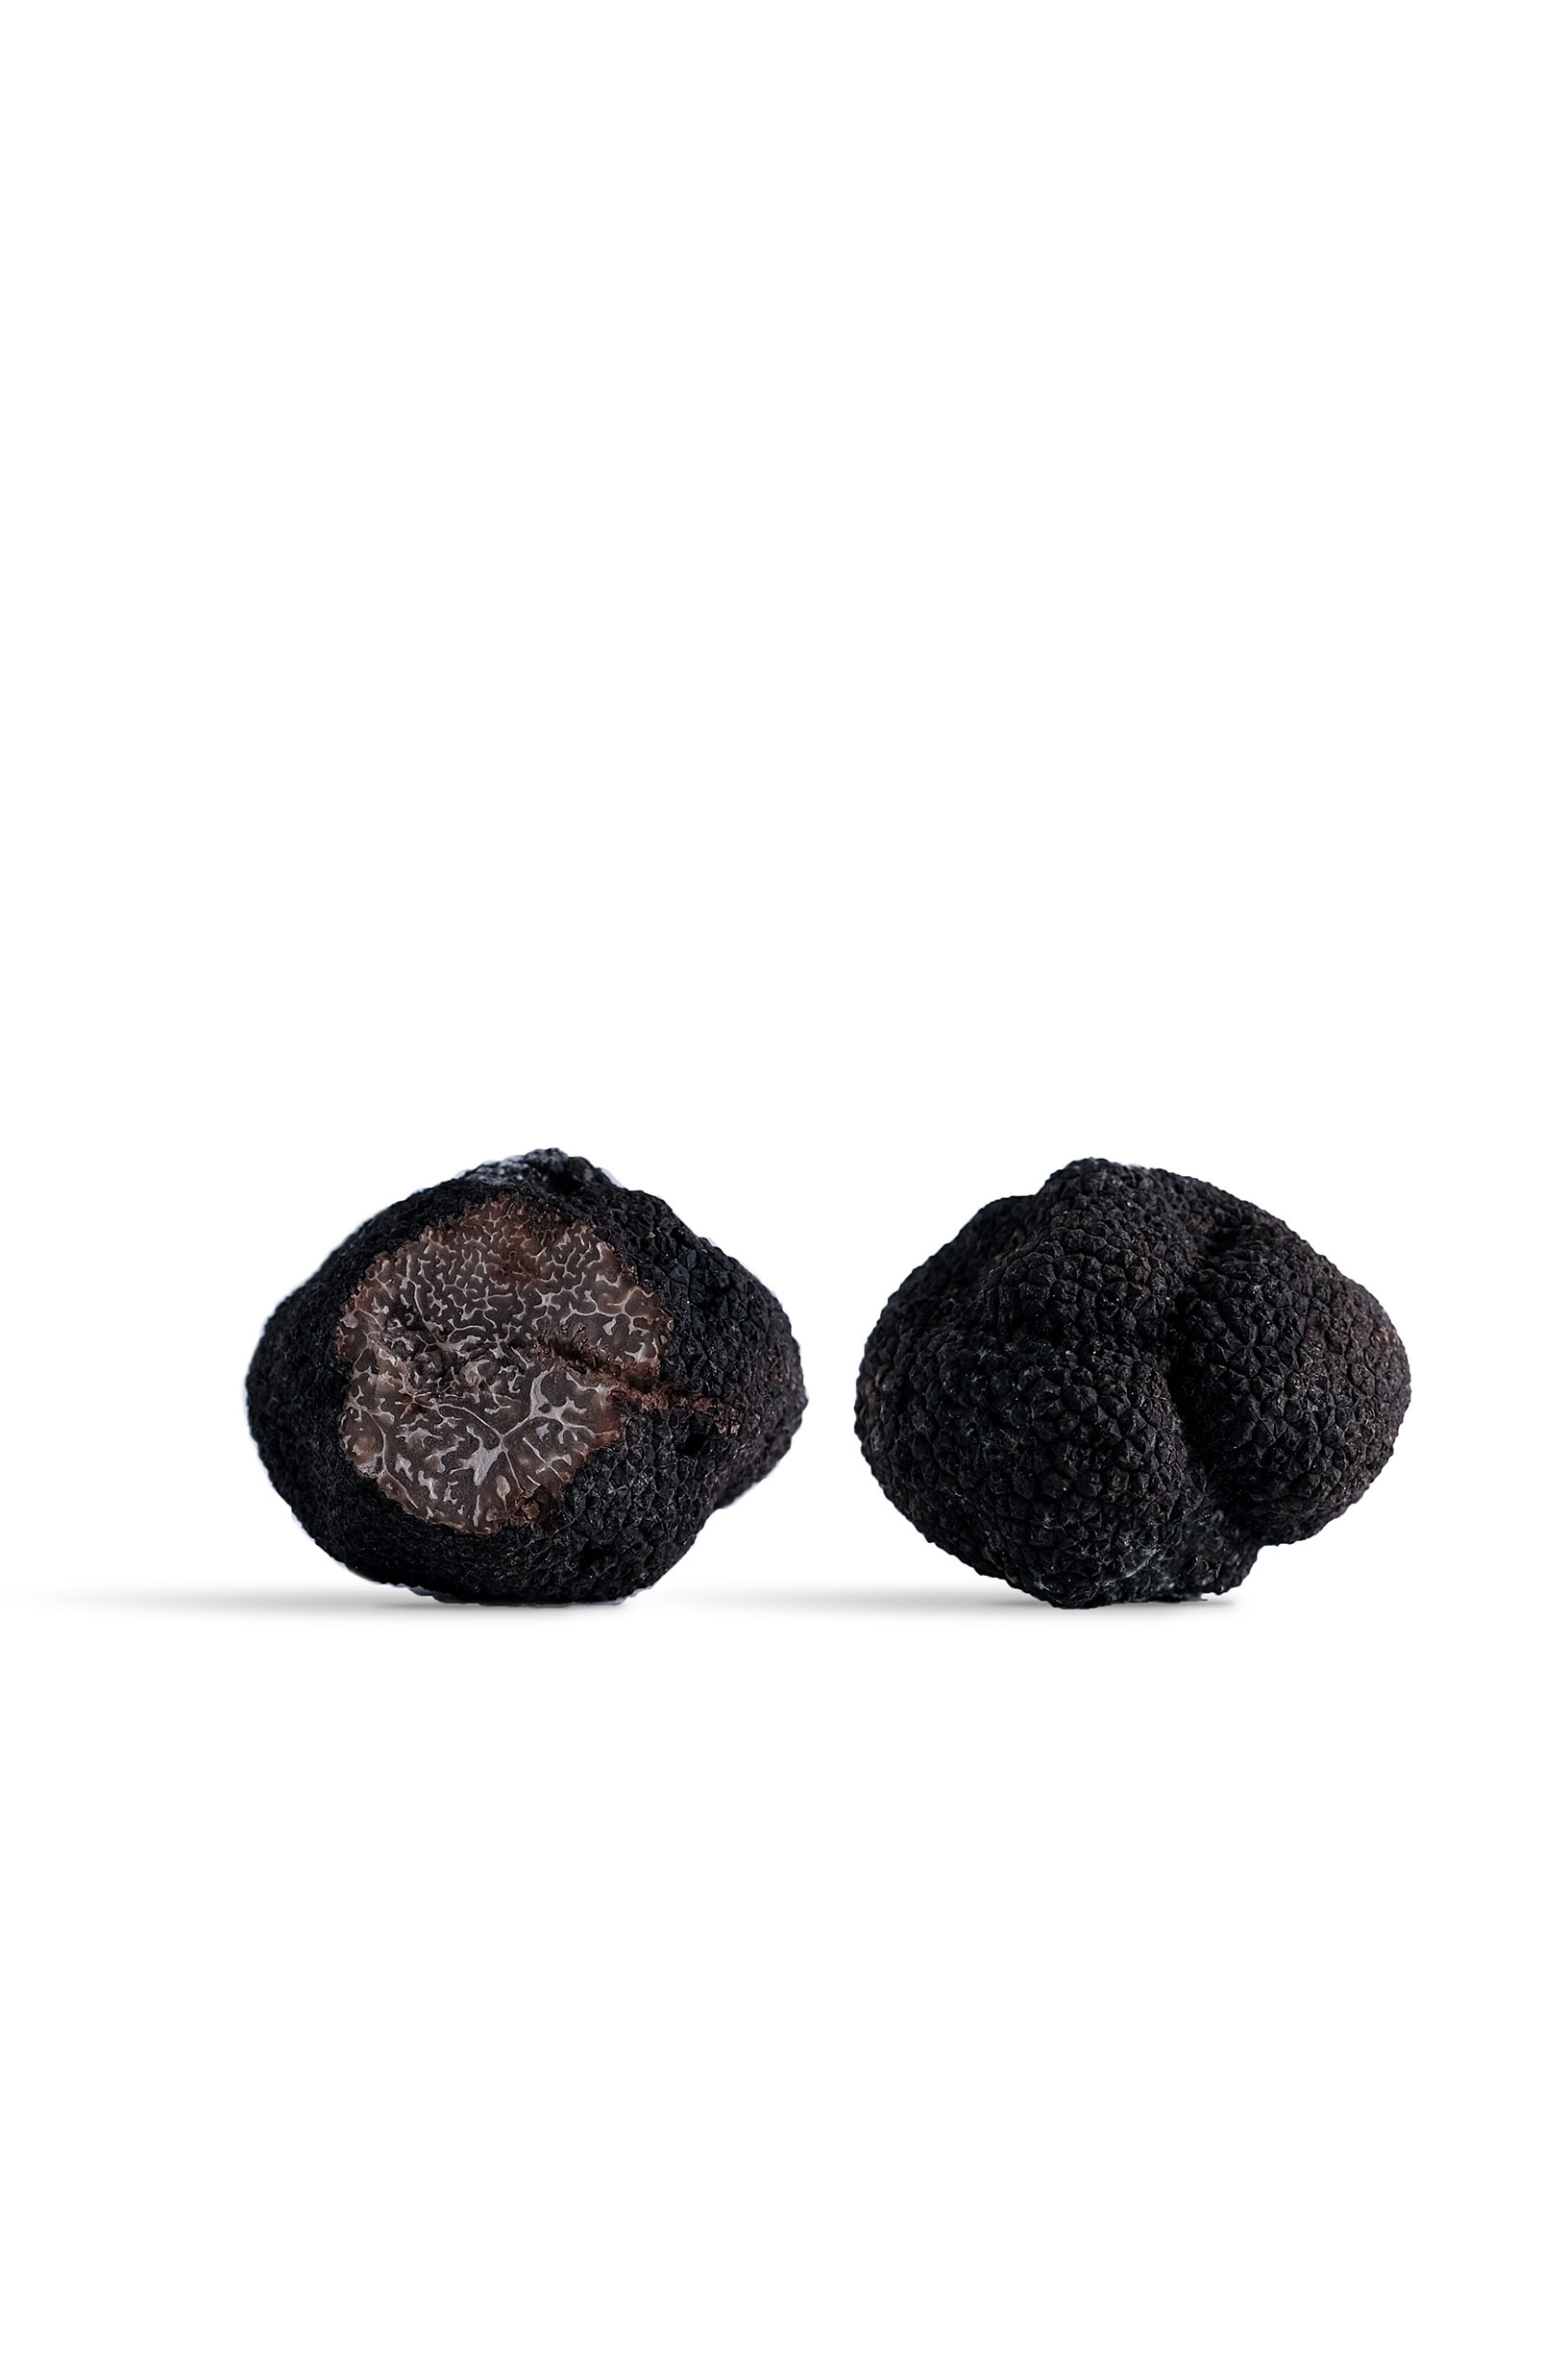 La truffe Noire du Périgord - Morceaux et petites truffes.